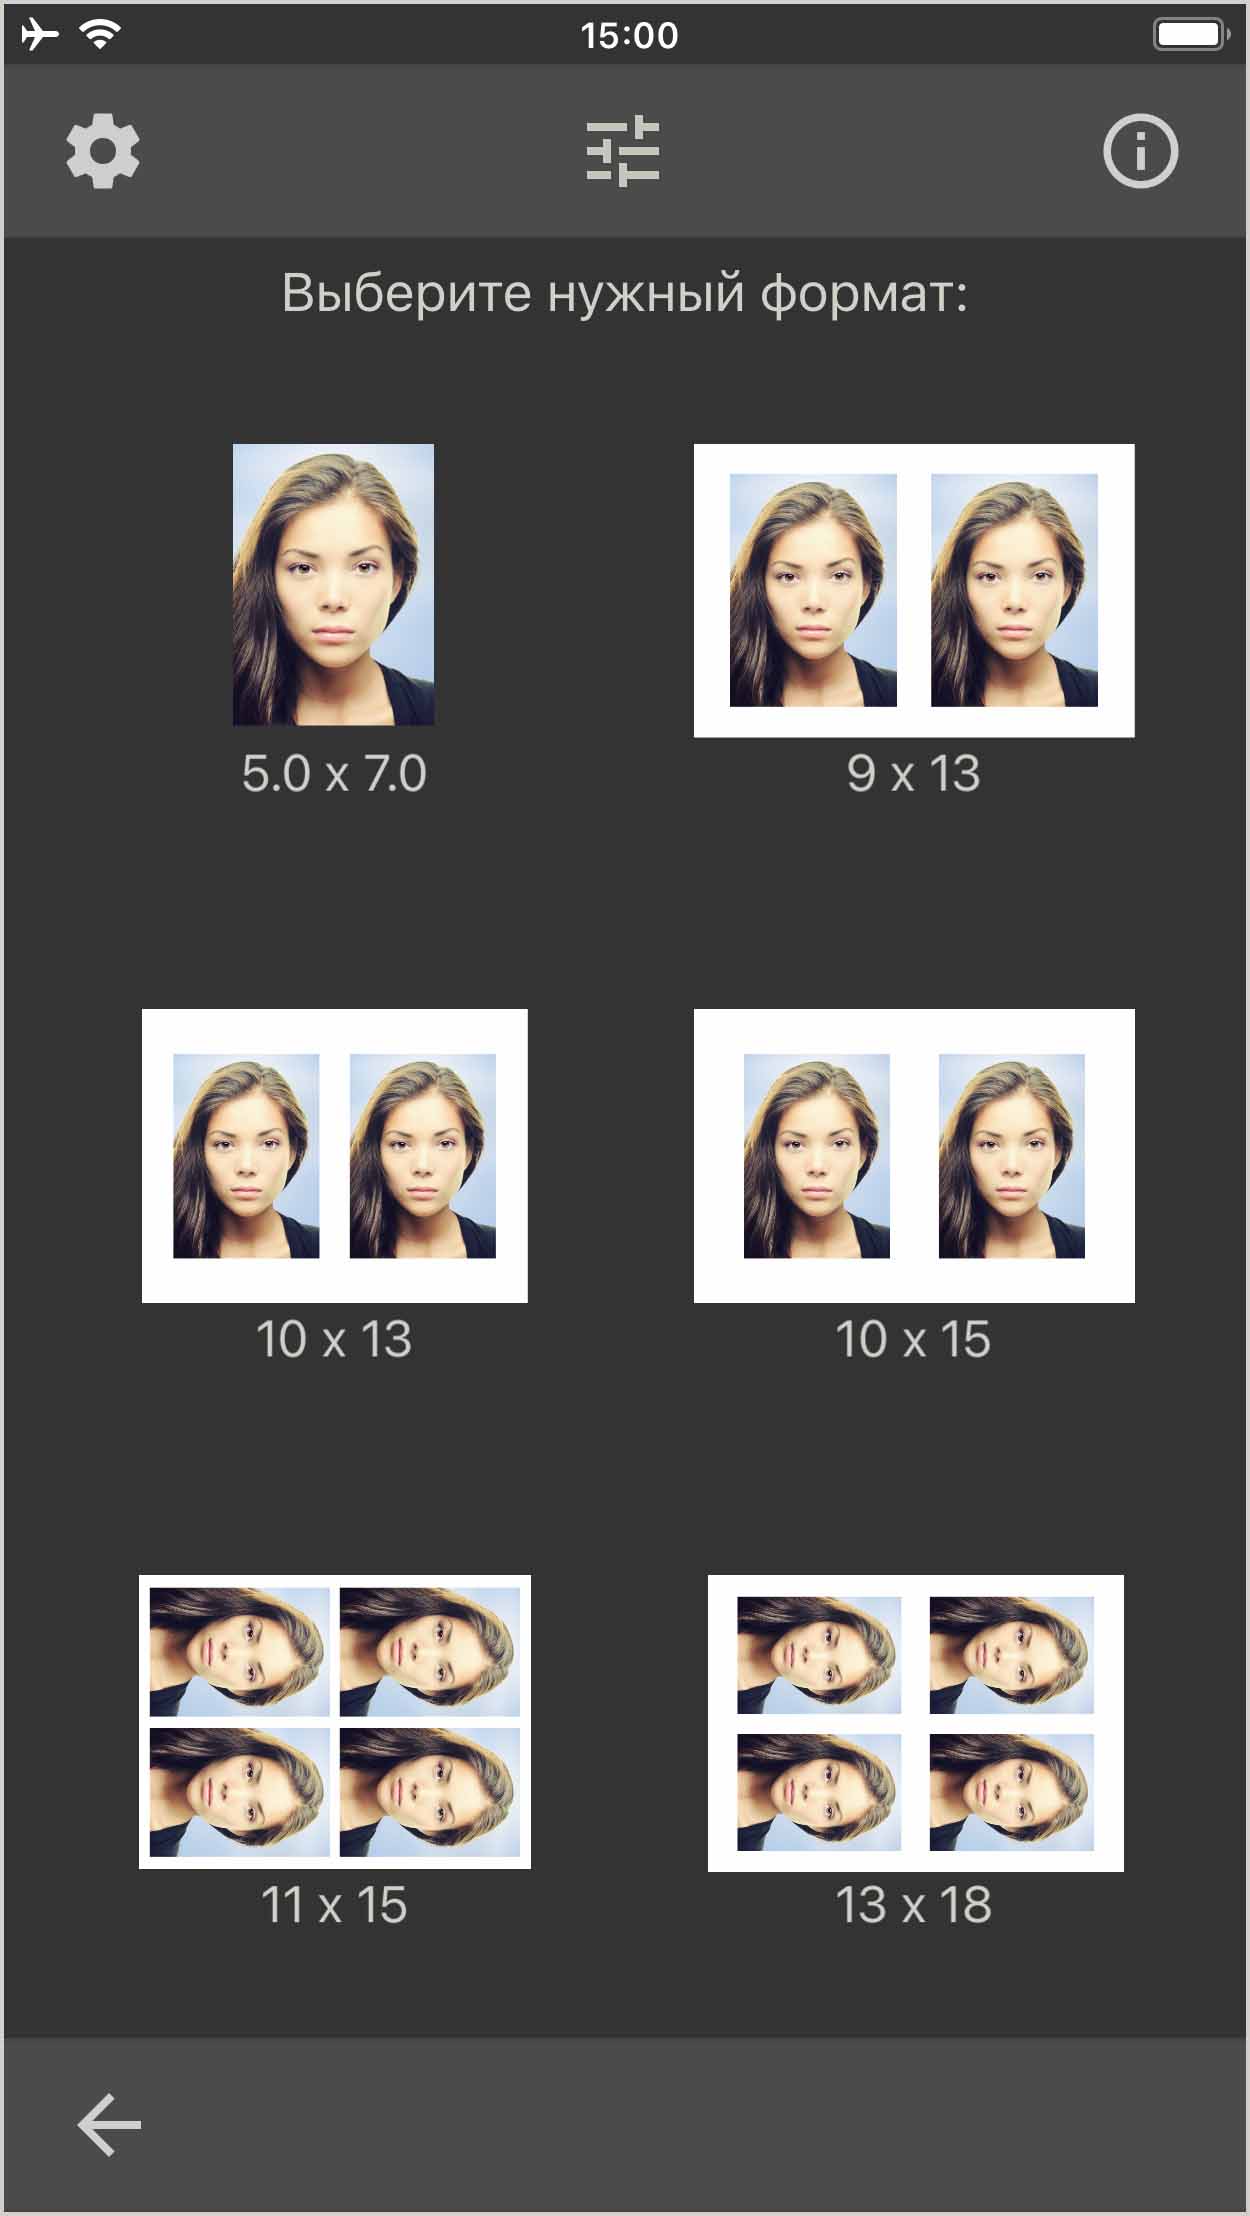 Распечатайте, сохраните или отправьте портретную фотографию 50 x 70 мм. (Приложение для iOS)